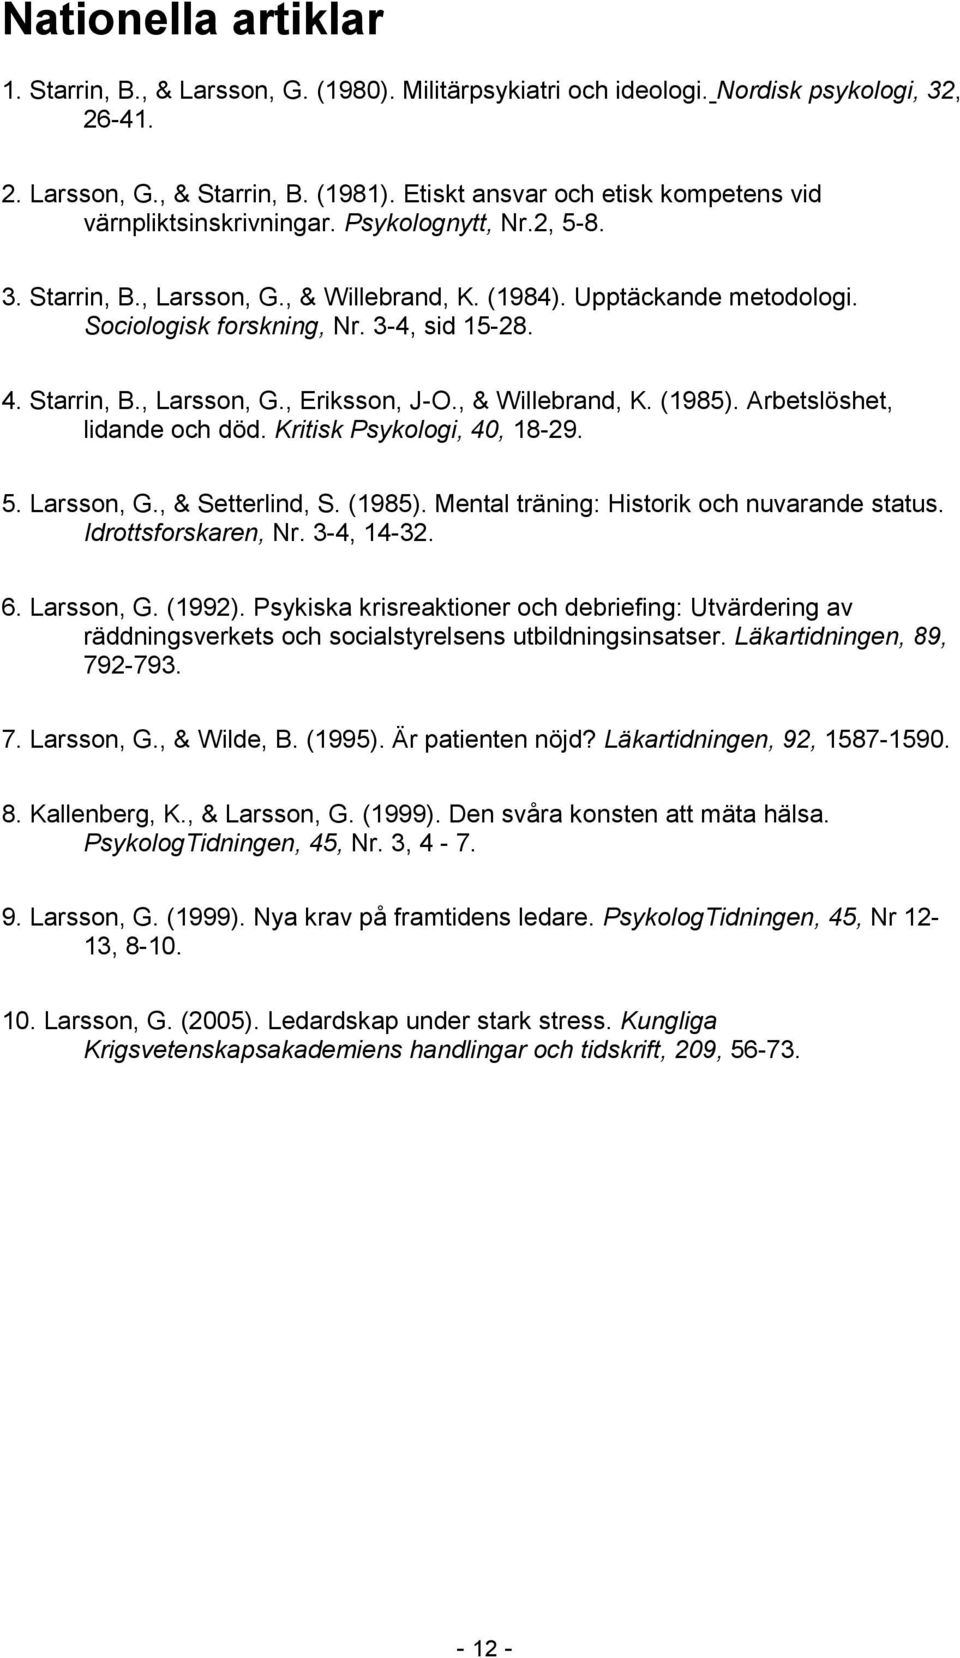 3-4, sid 15-28. 4. Starrin, B., Larsson, G., Eriksson, J-O., & Willebrand, K. (1985). Arbetslöshet, lidande och död. Kritisk Psykologi, 40, 18-29. 5. Larsson, G., & Setterlind, S. (1985). Mental träning: Historik och nuvarande status.